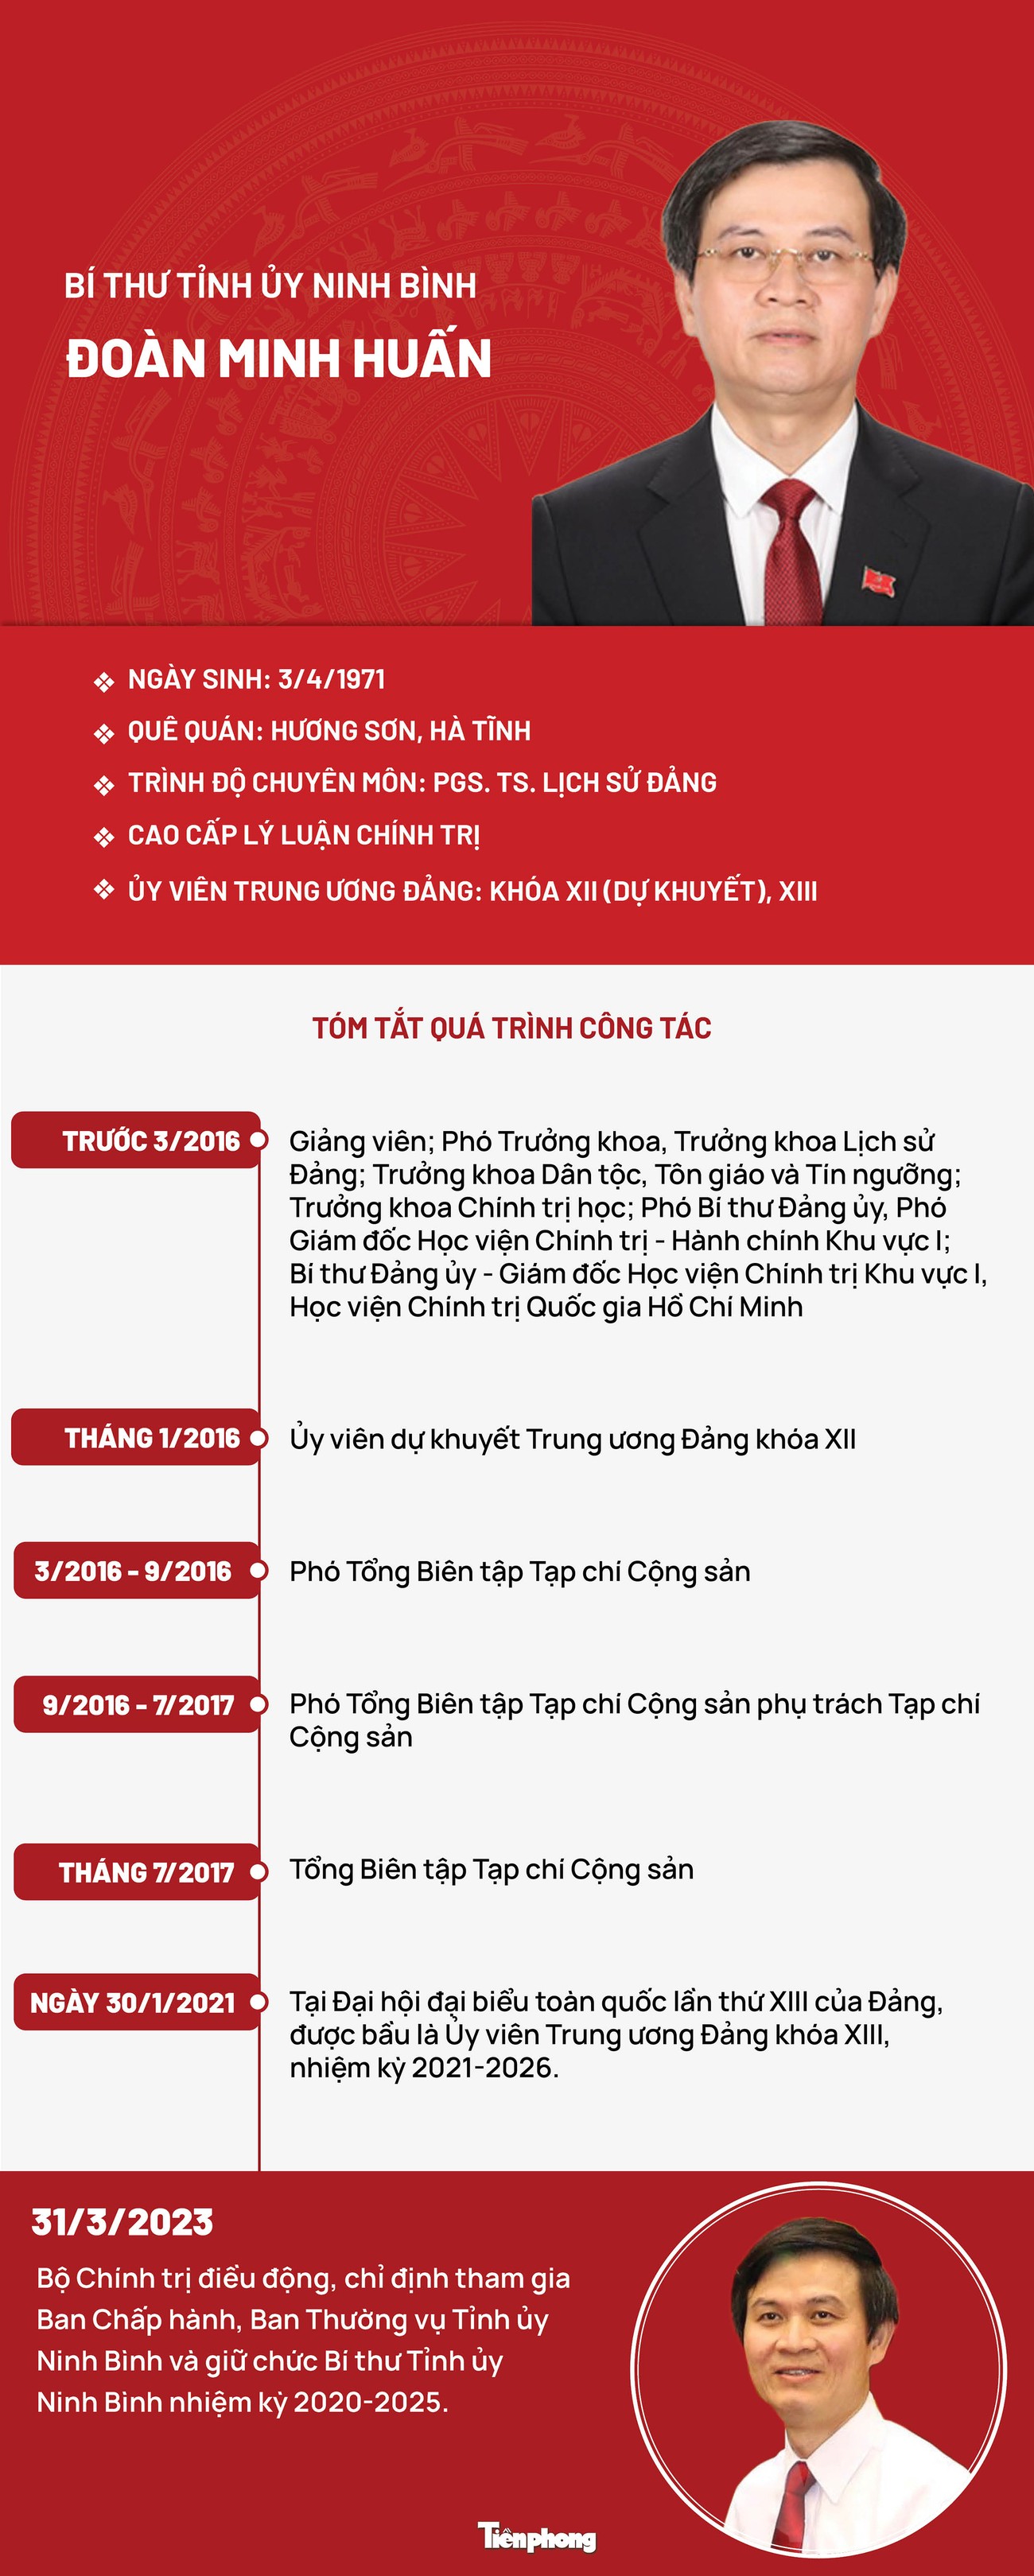 [Infographic] Chân dung Bí thư Tỉnh ủy Ninh Bình Đoàn Minh Huấn - Ảnh 1.